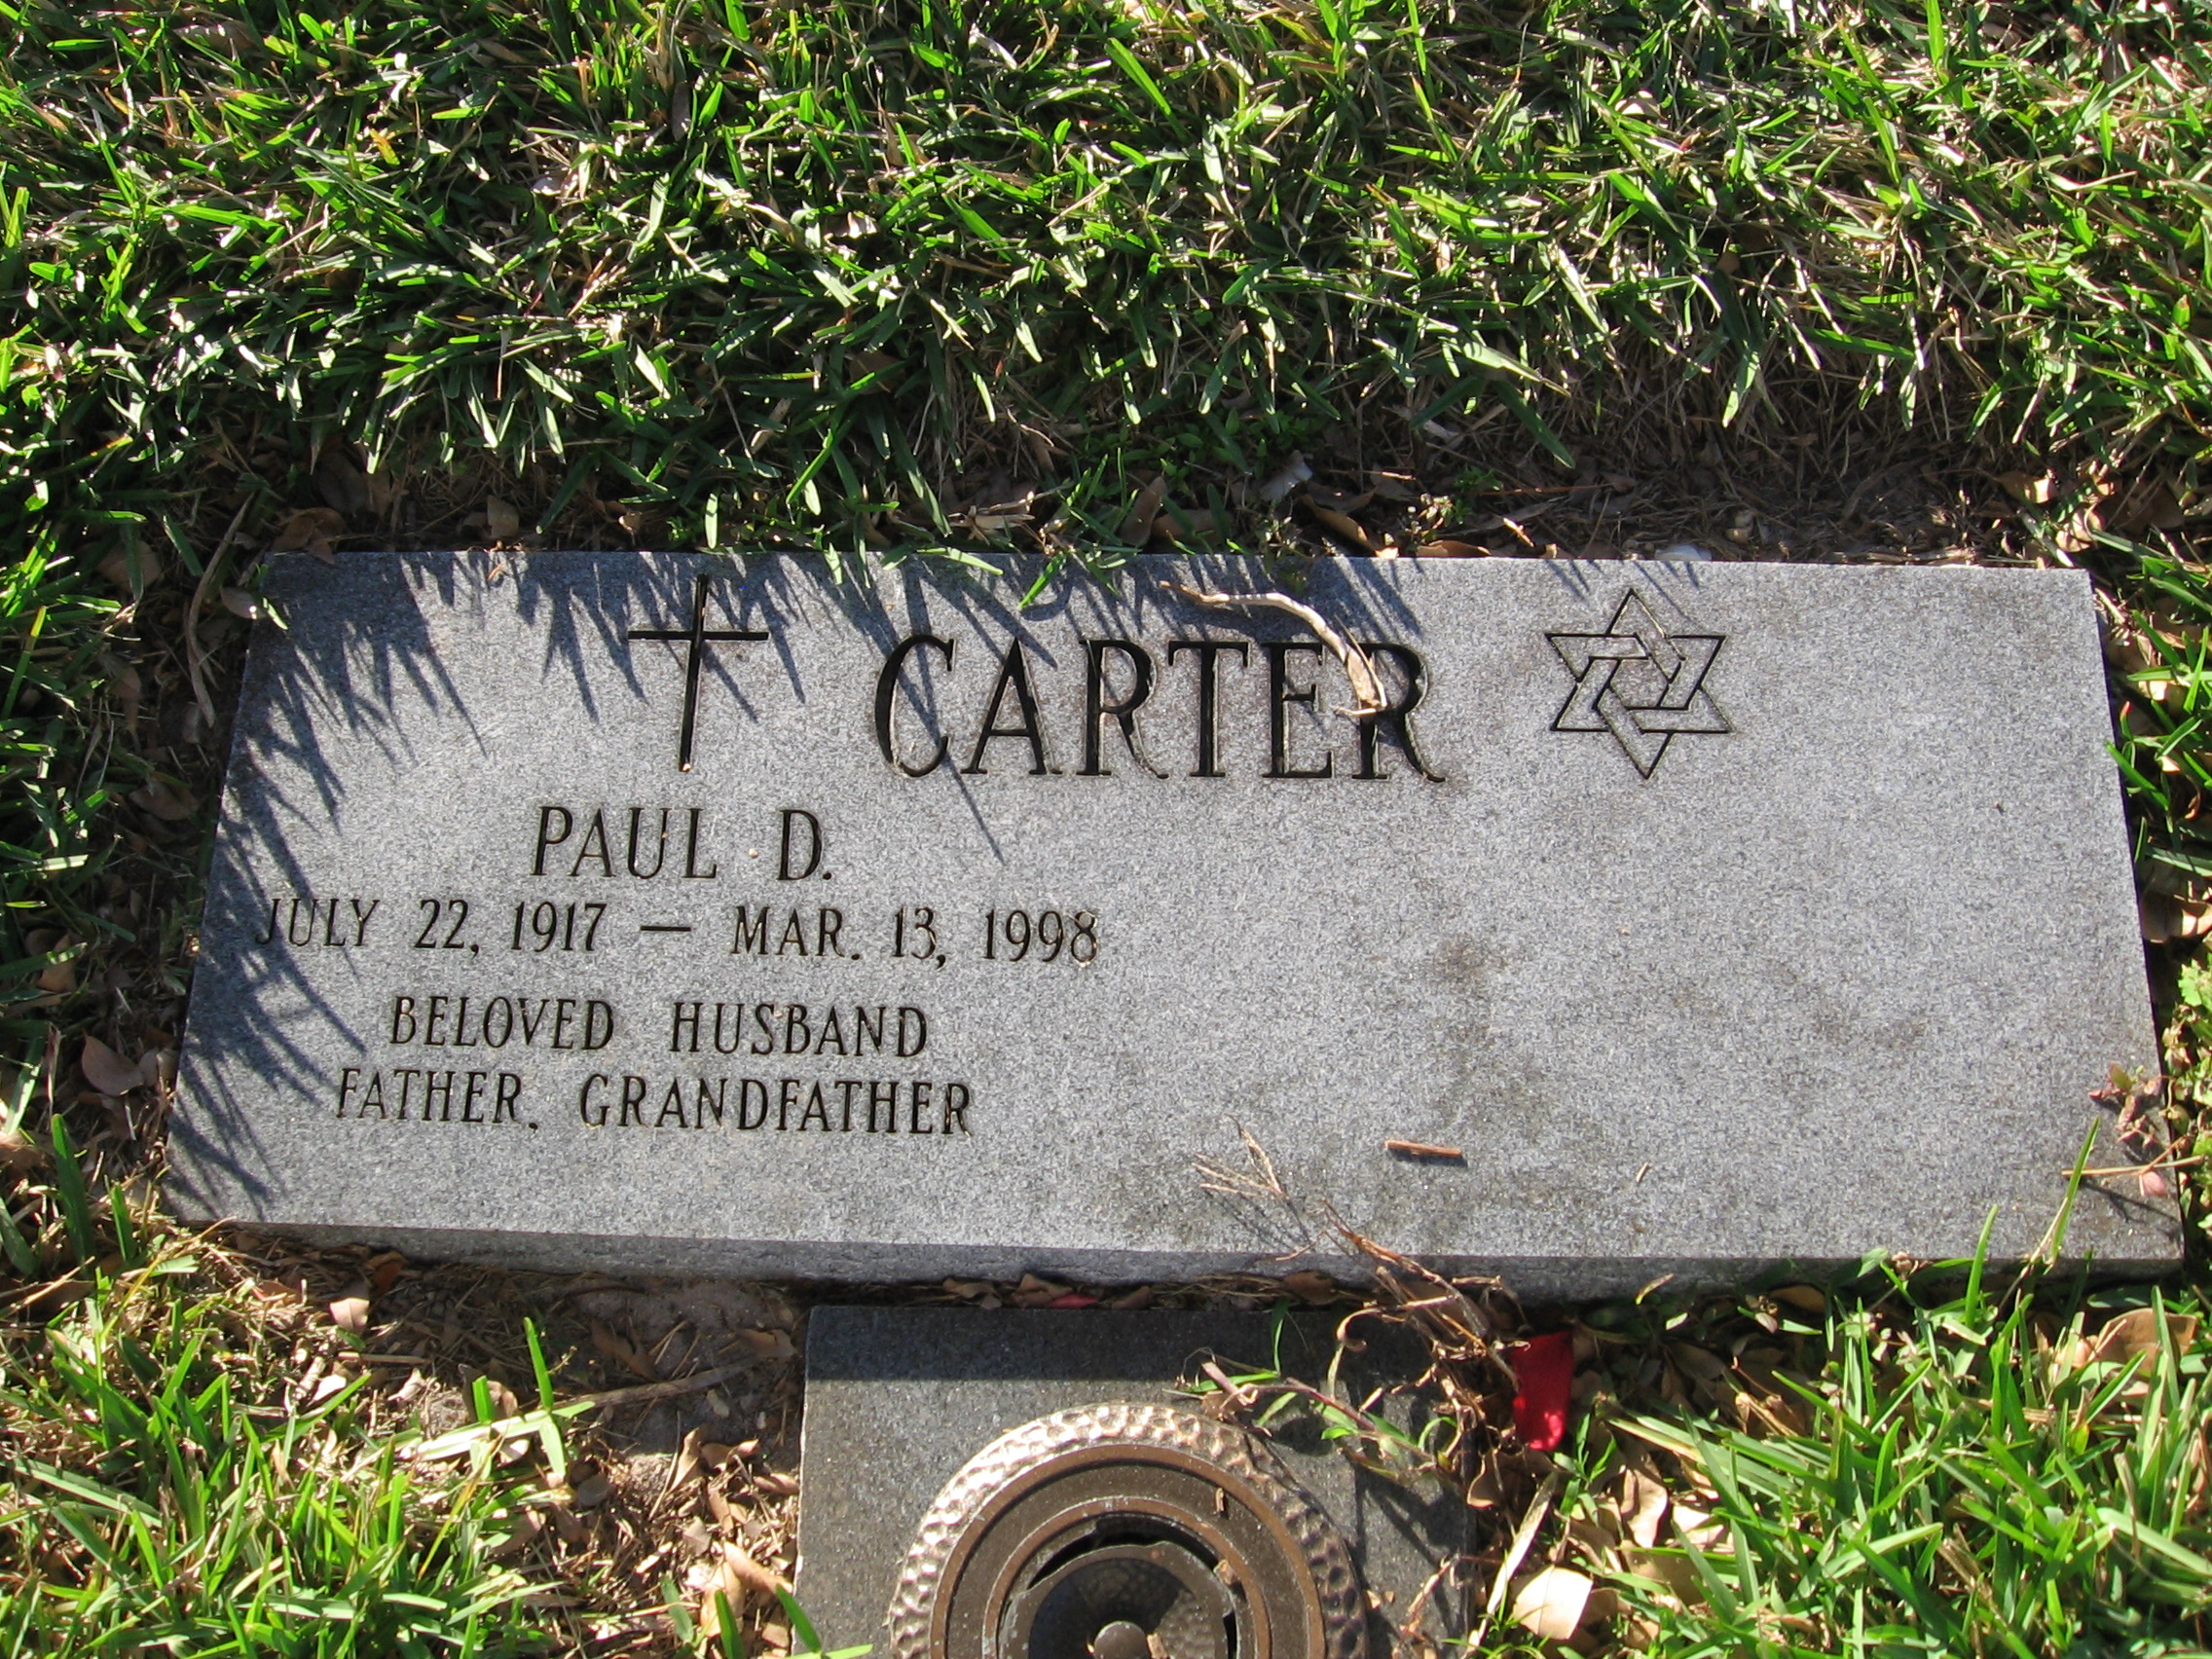 Paul D Carter